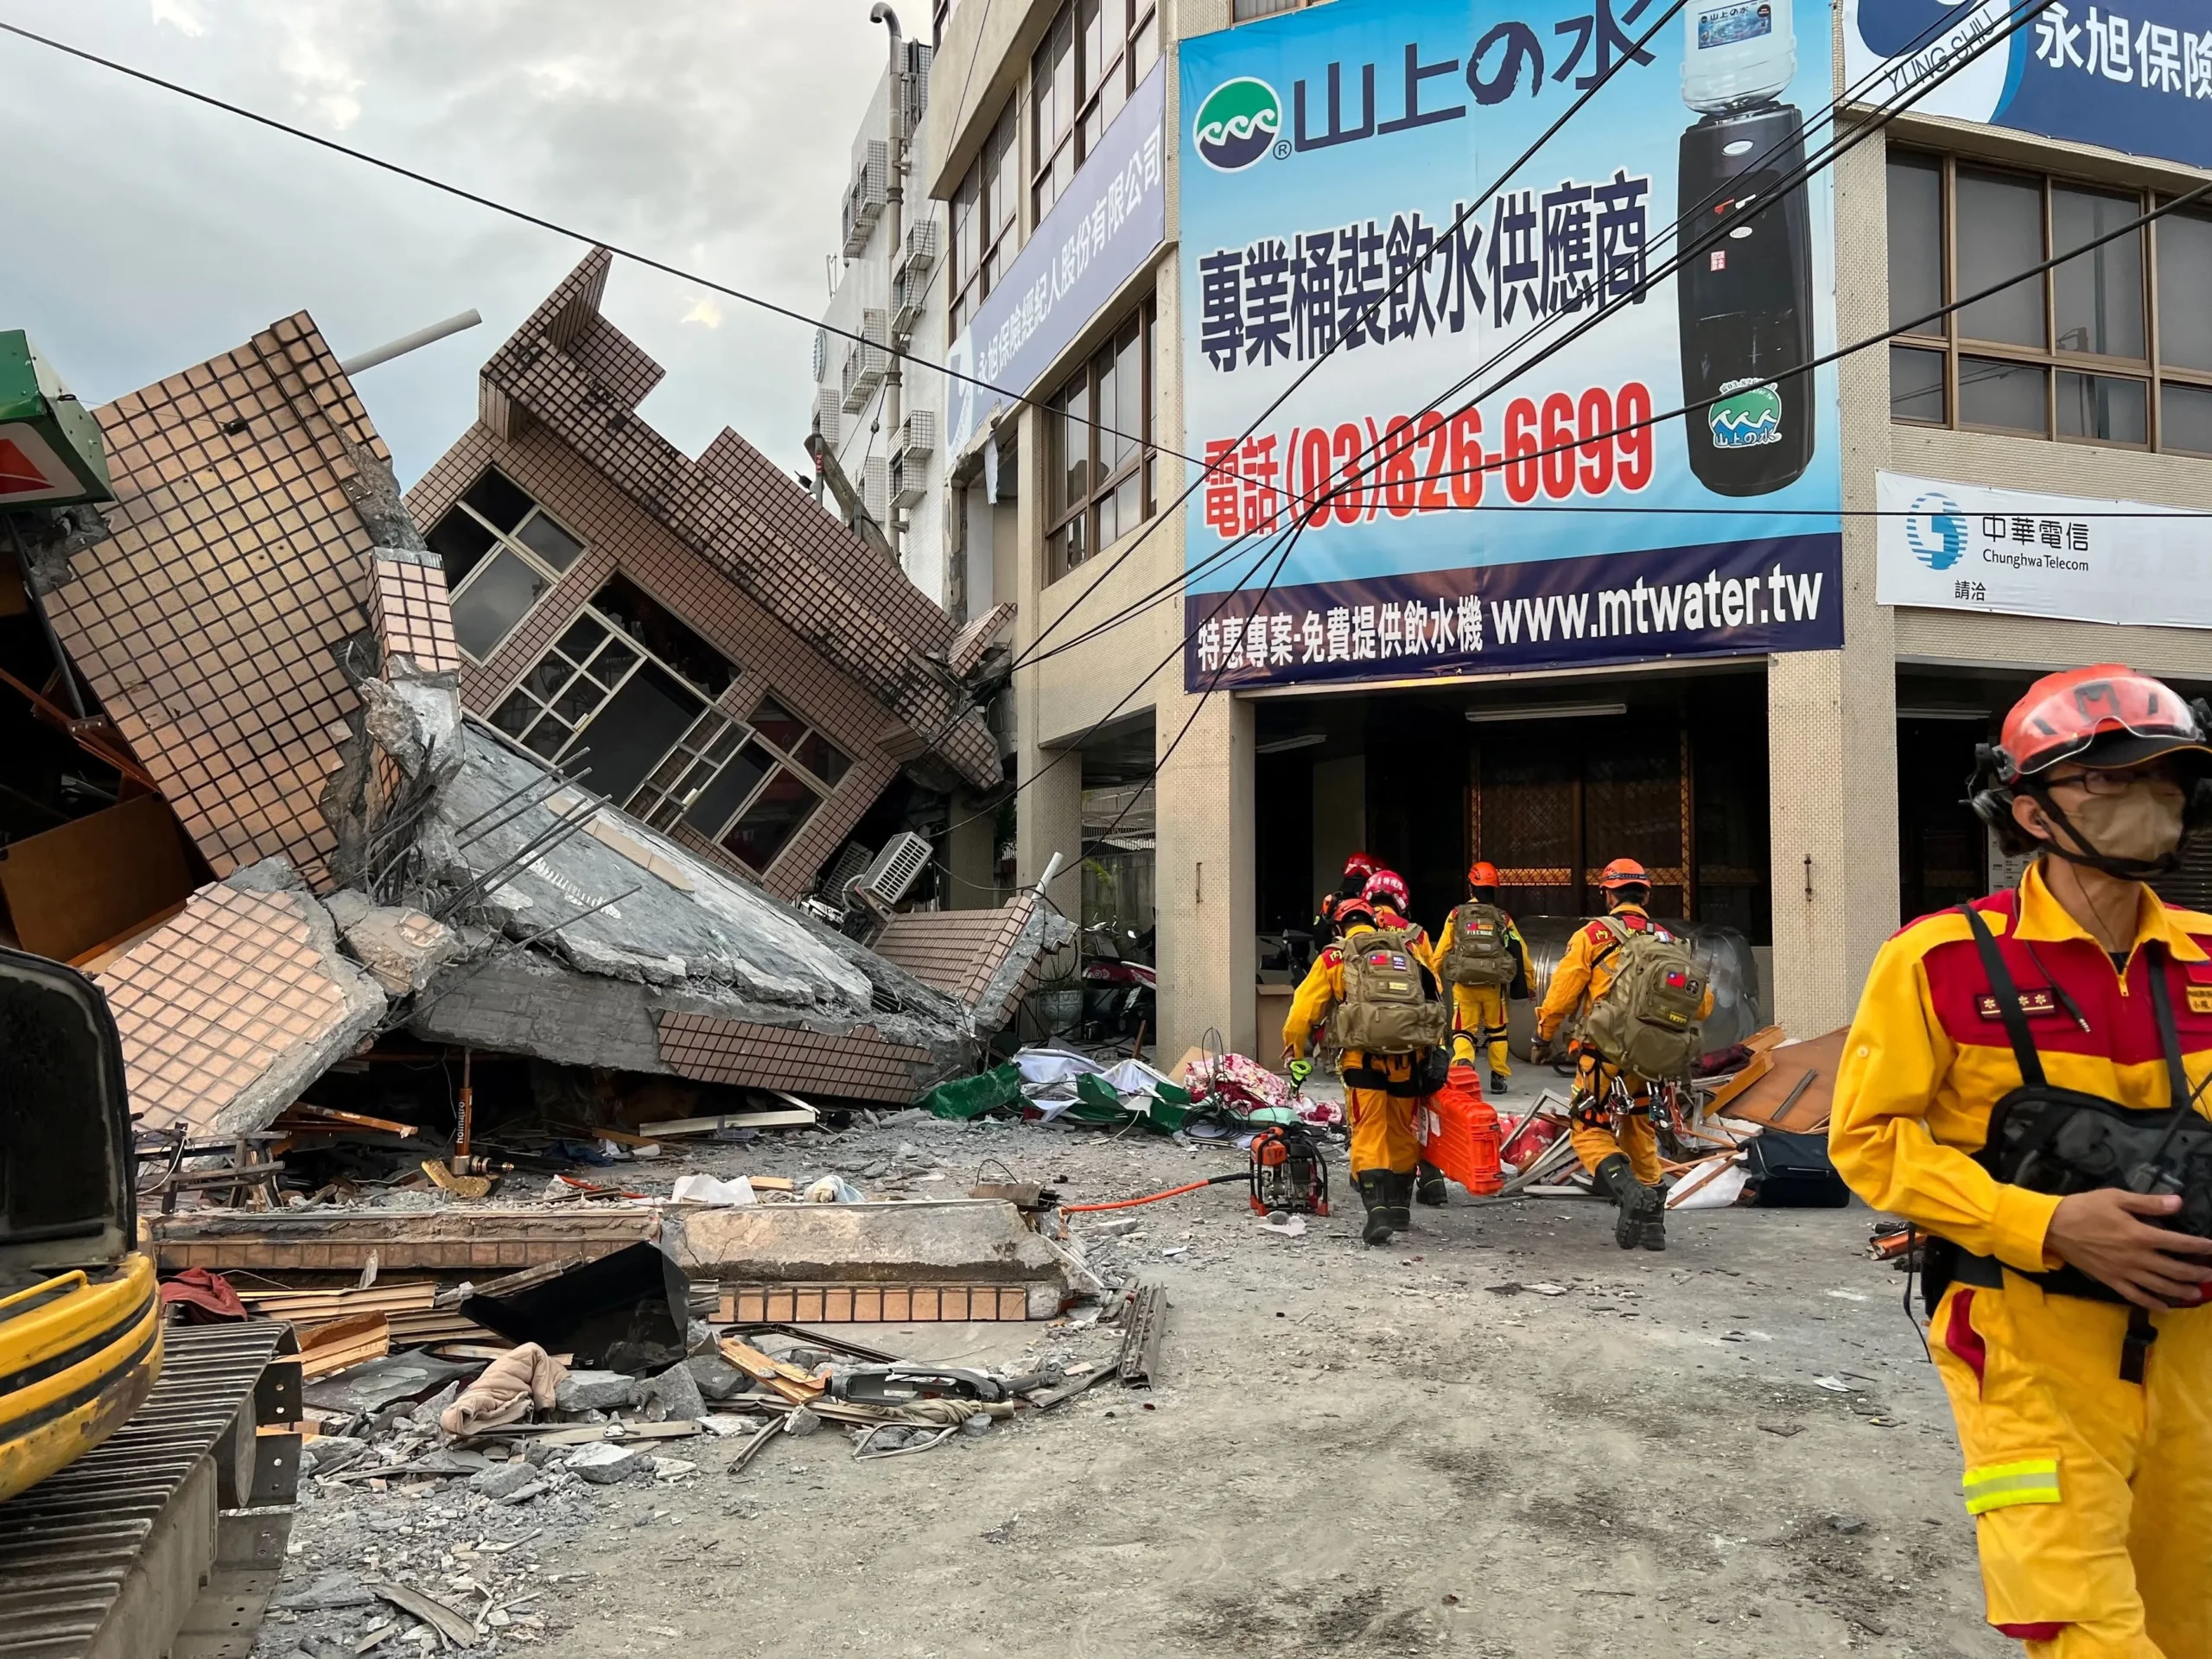 Taiwan में ‘बीते 25 वर्षों का सबसे शक्तिशाली भूकंप’ आया, कम से कम 7 लोगों की मौत, लगभग 730 घायल